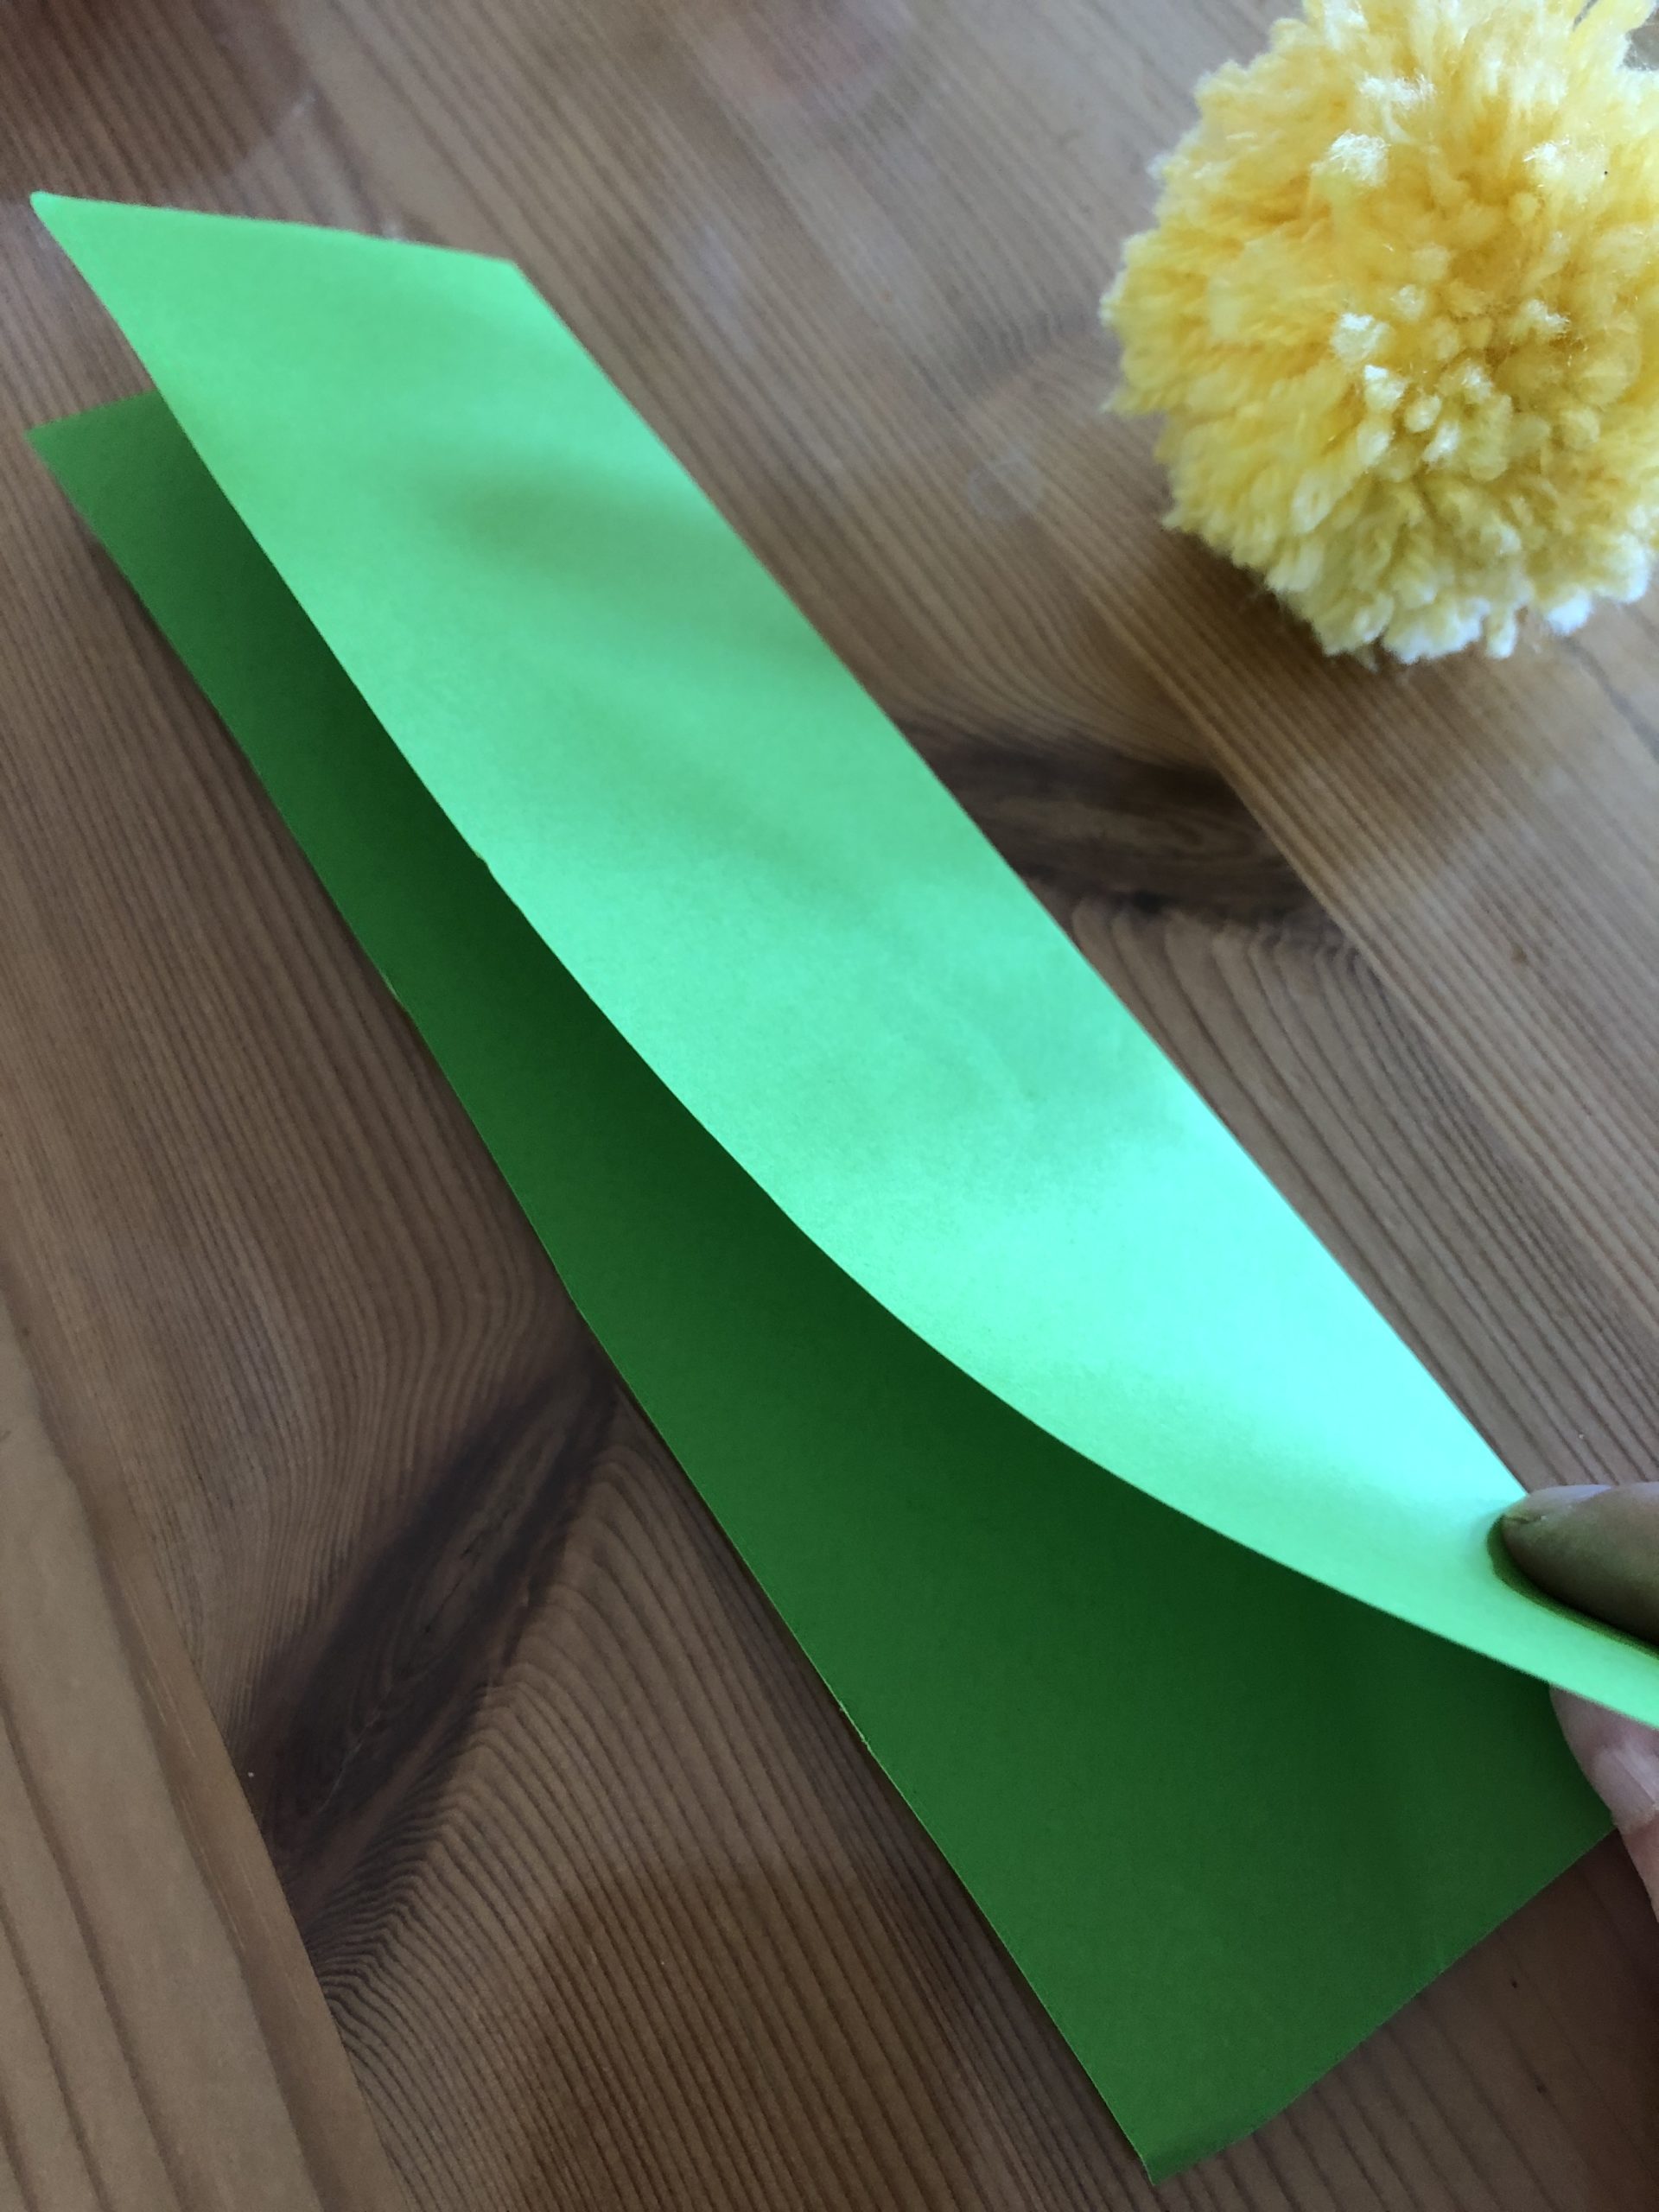 Bild zum Schritt 2 für die Kinder-Beschäftigung: 'Grünes Papier halbieren damit ein 5 cm breiter Streifen entsteht....'